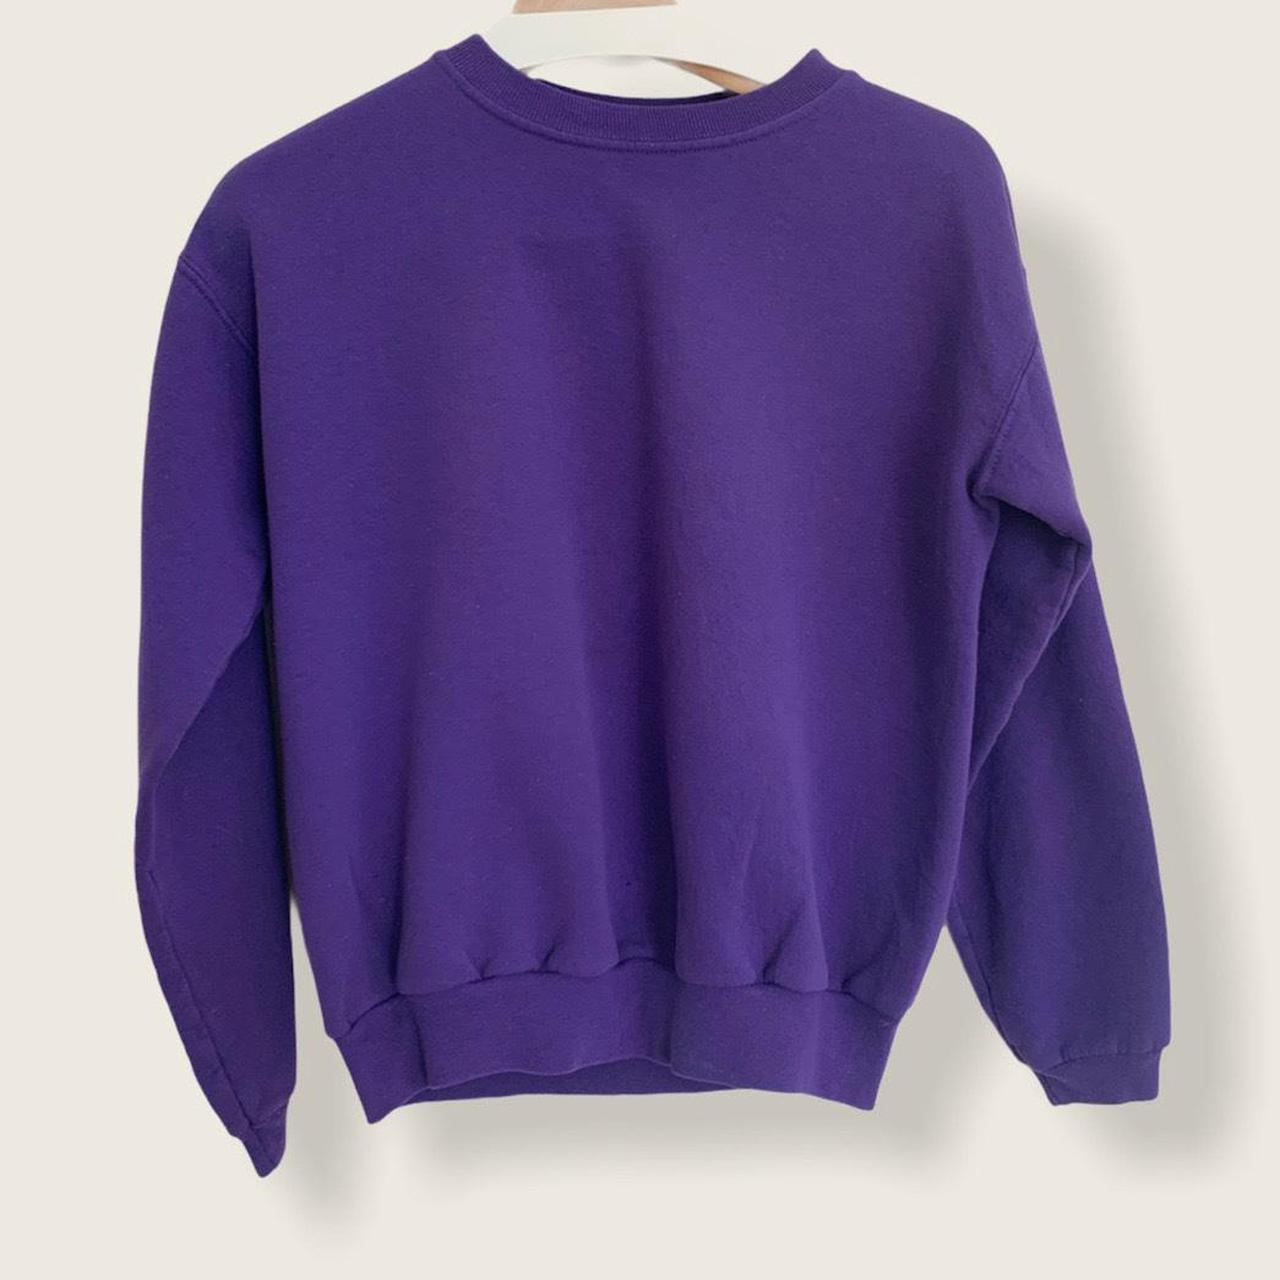 Plain purple crewneck sweatshirt, Hanes Her Way... - Depop